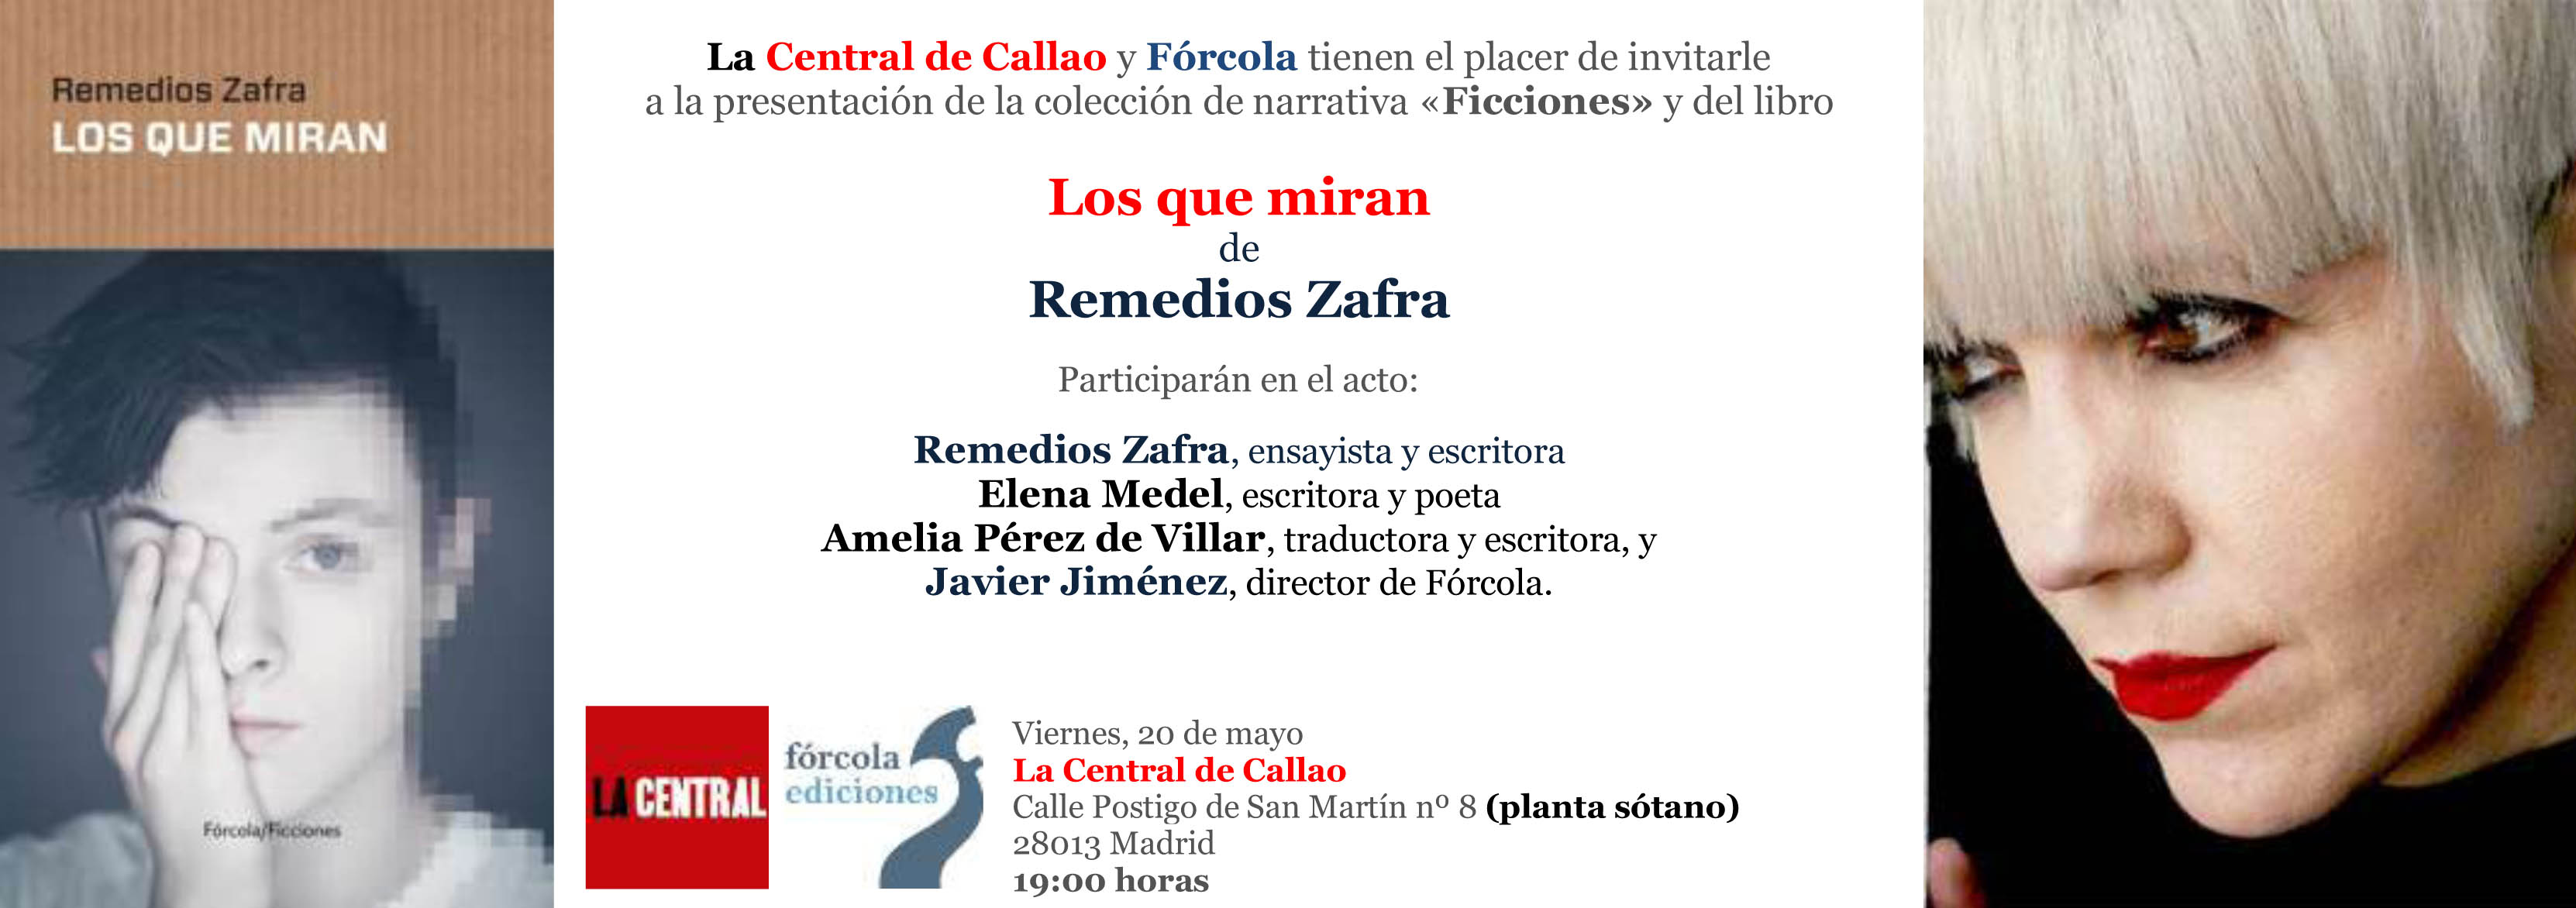 Invitacion_presentacion_Callao_Zafra